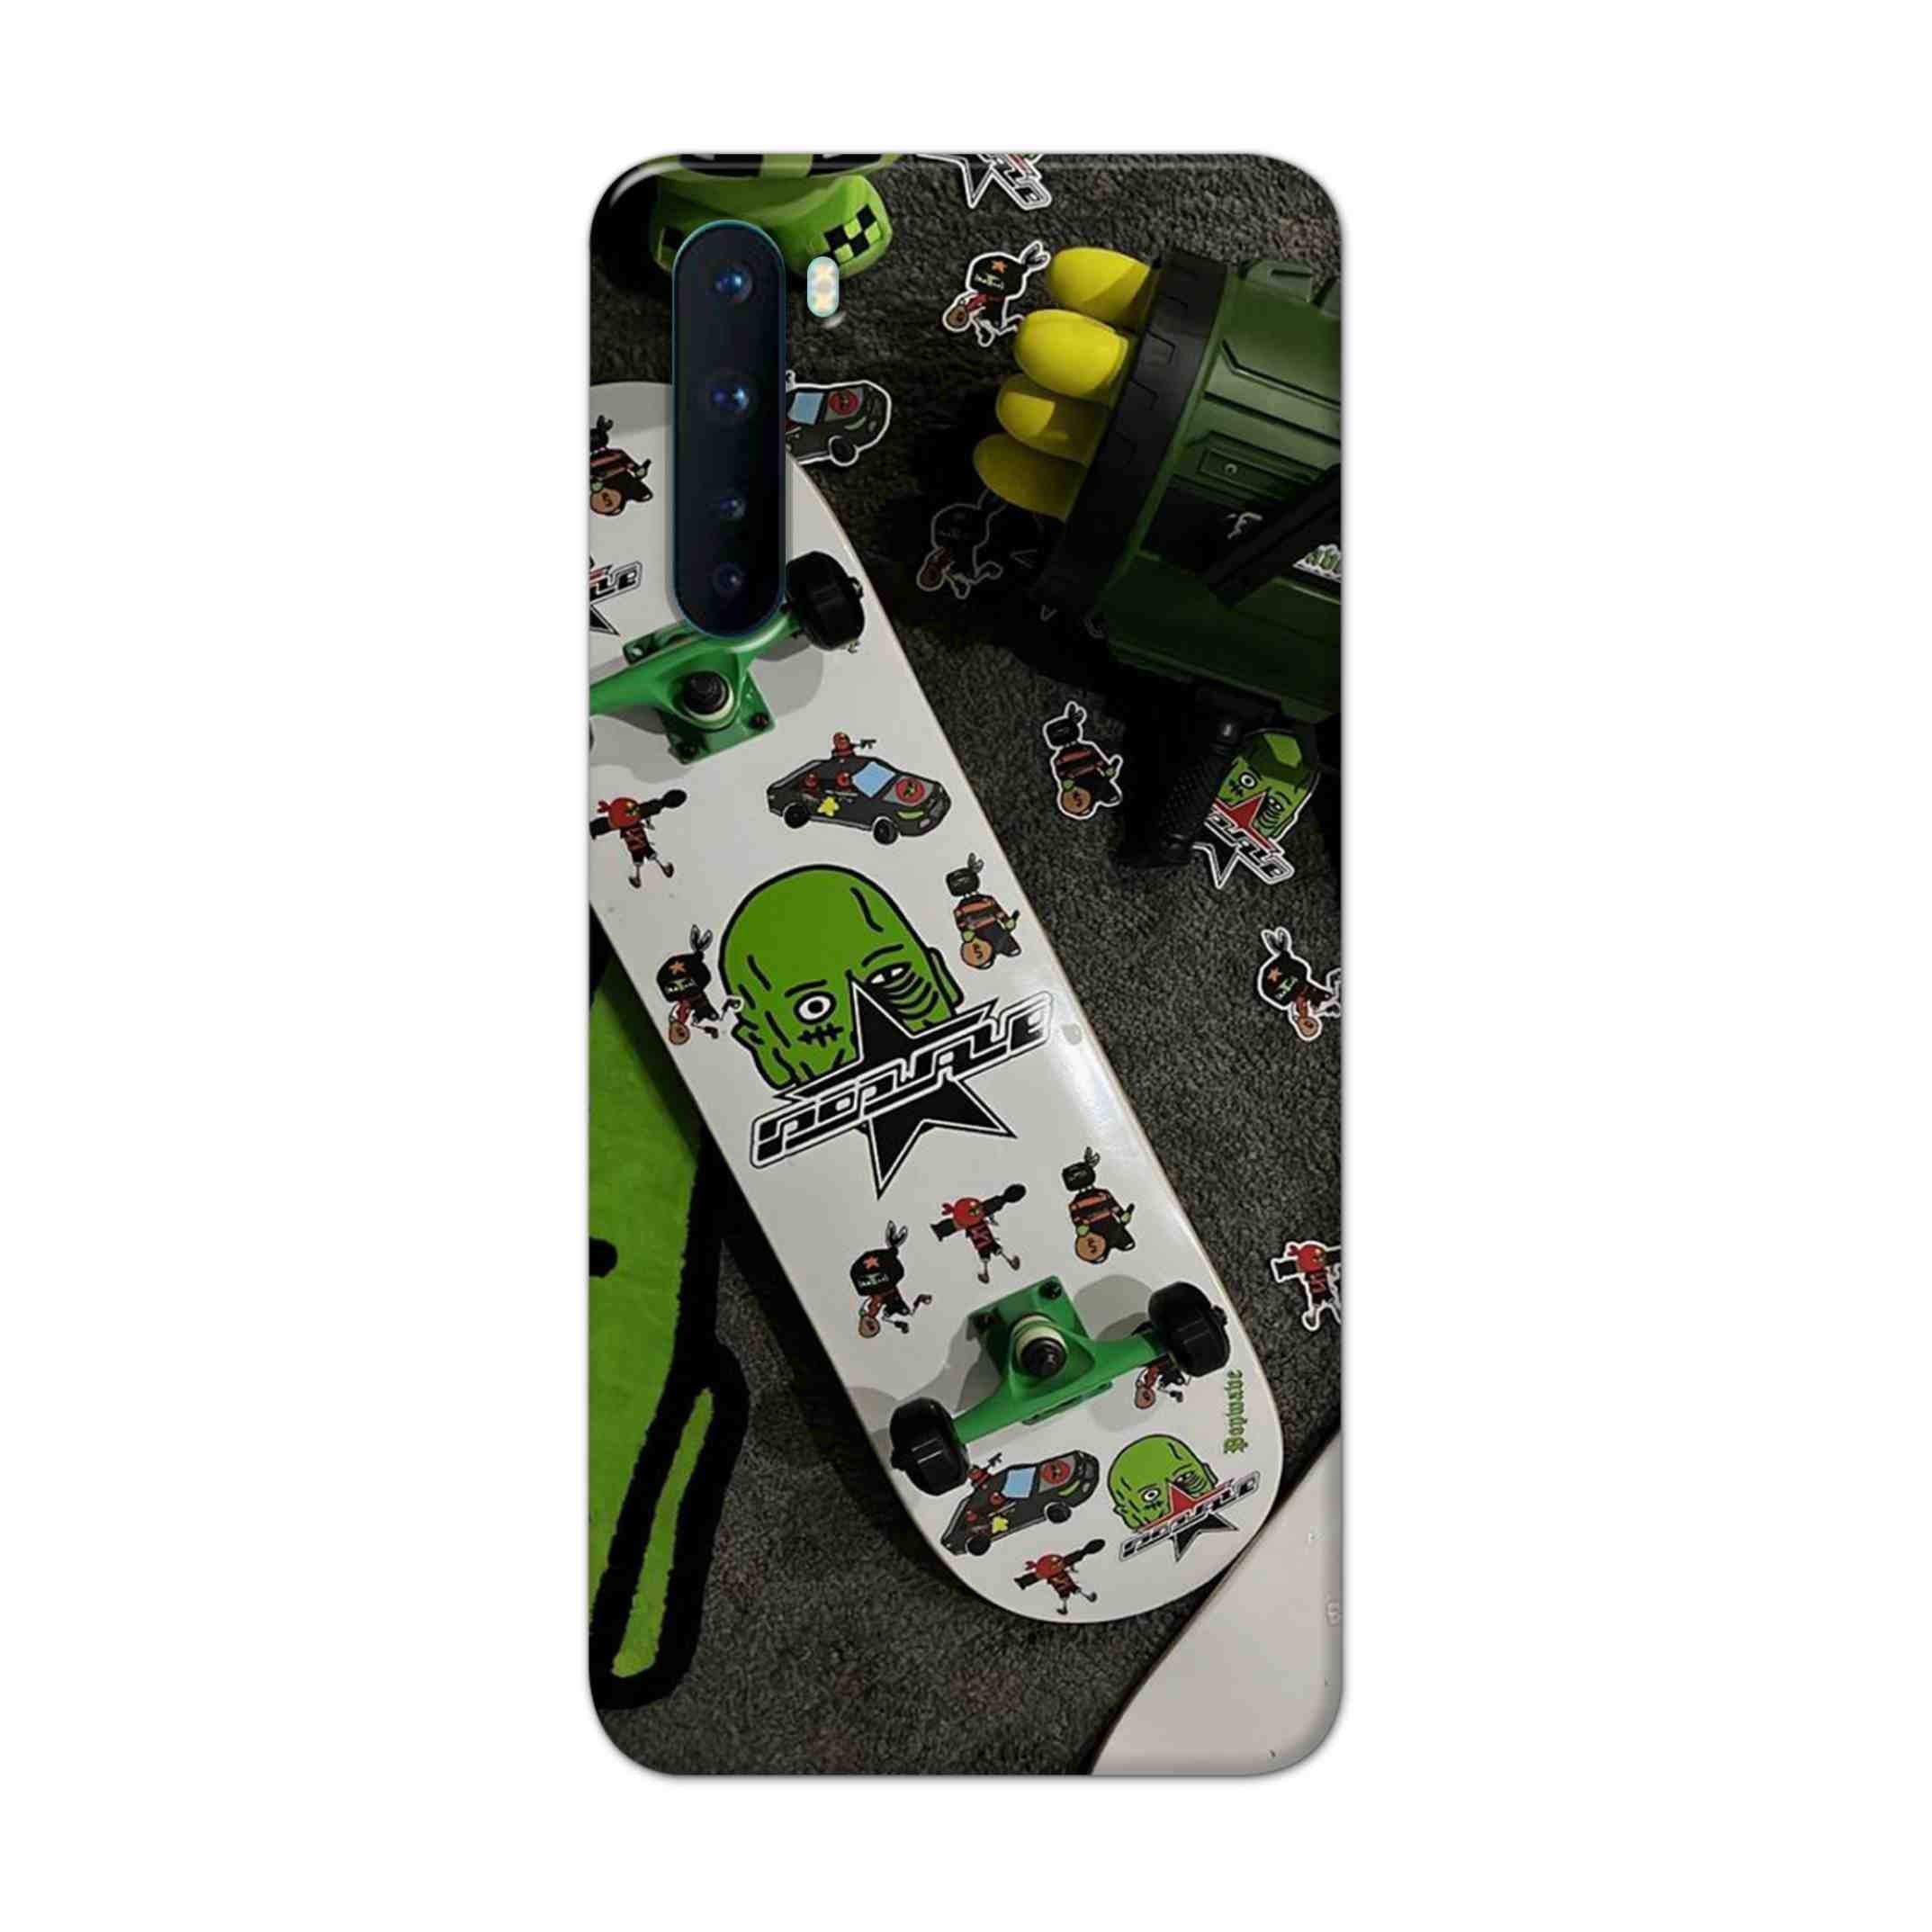 Buy Hulk Skateboard Hard Back Mobile Phone Case Cover For OnePlus Nord Online